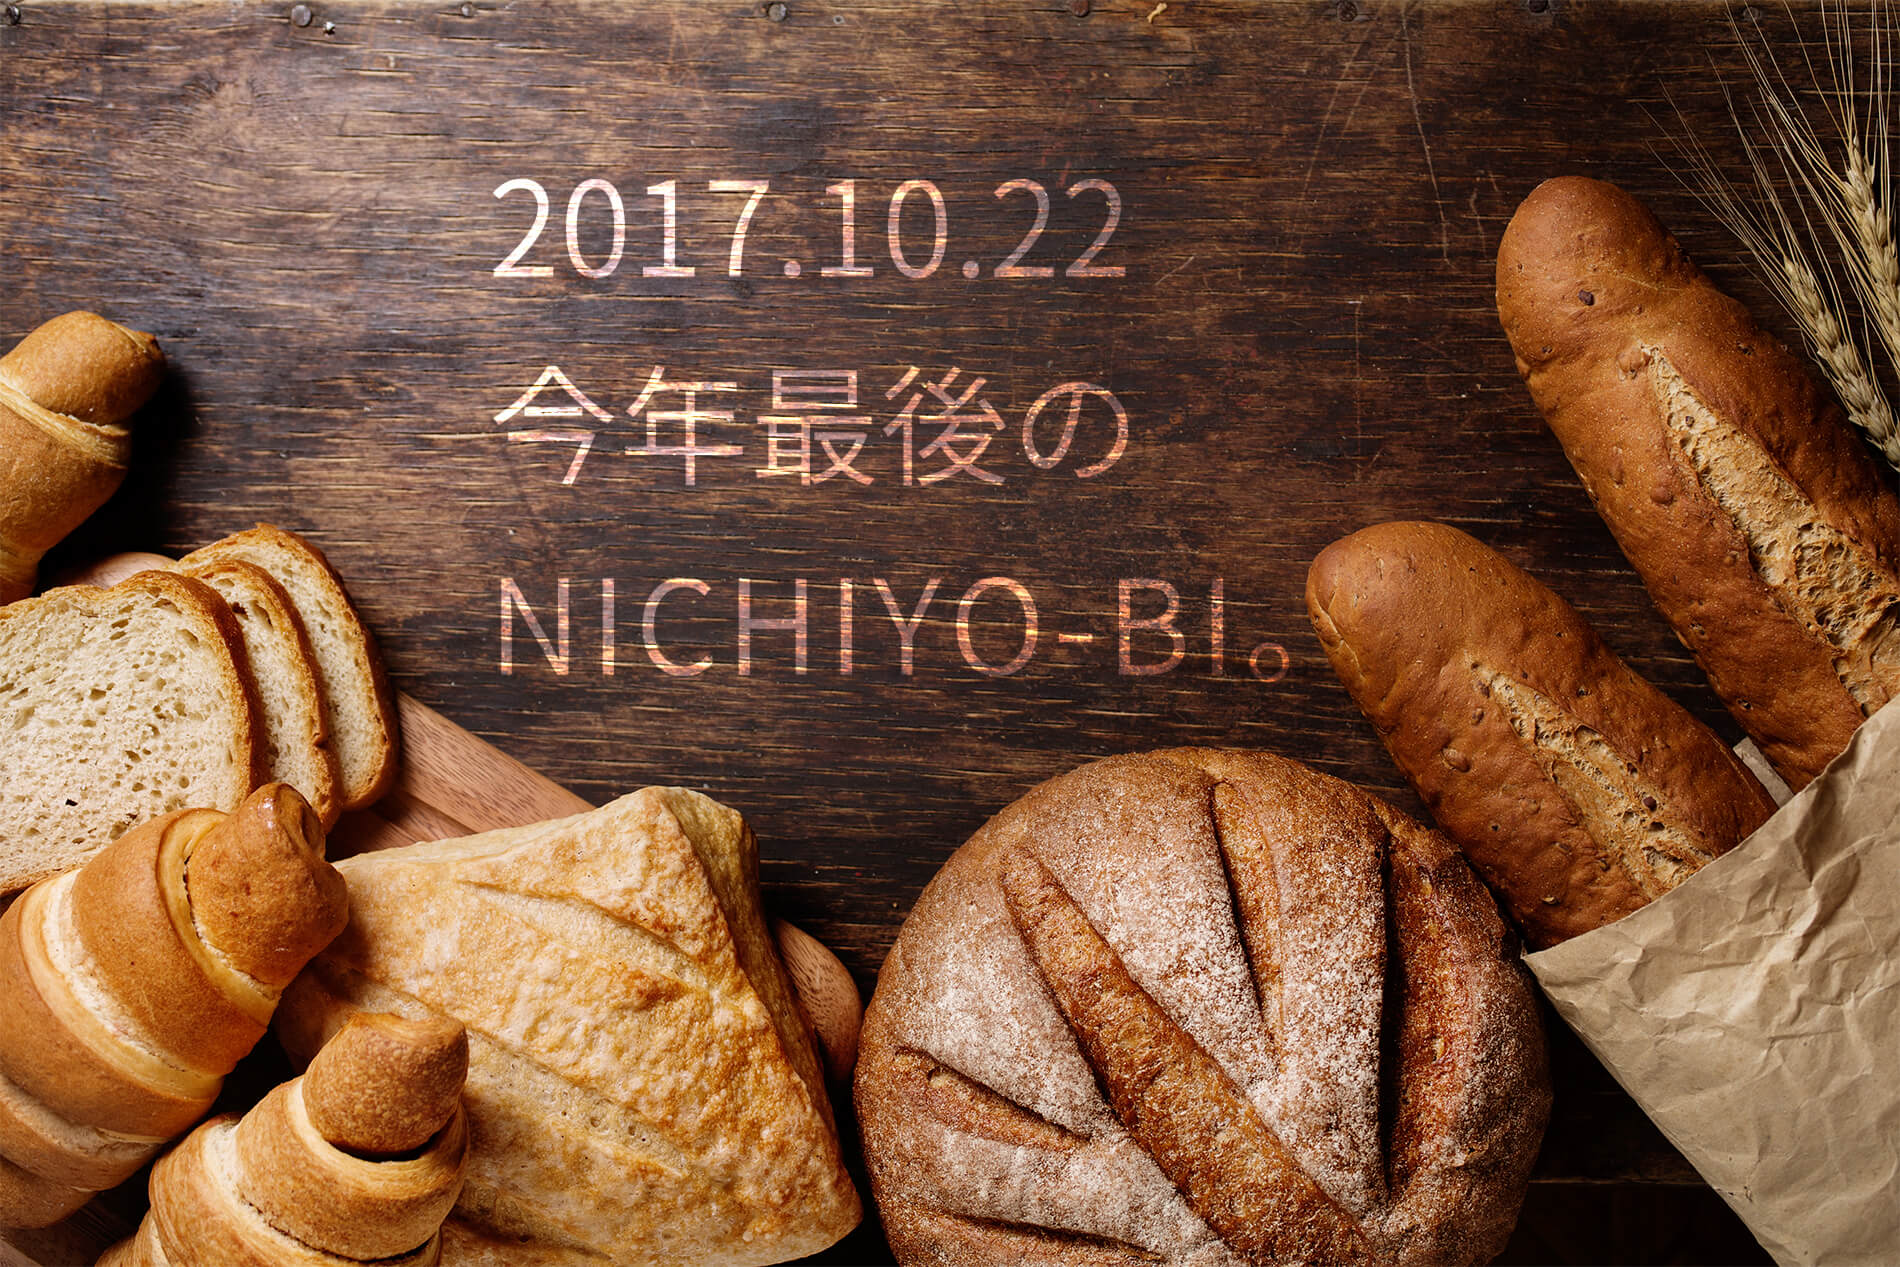 nichiyobi_2017